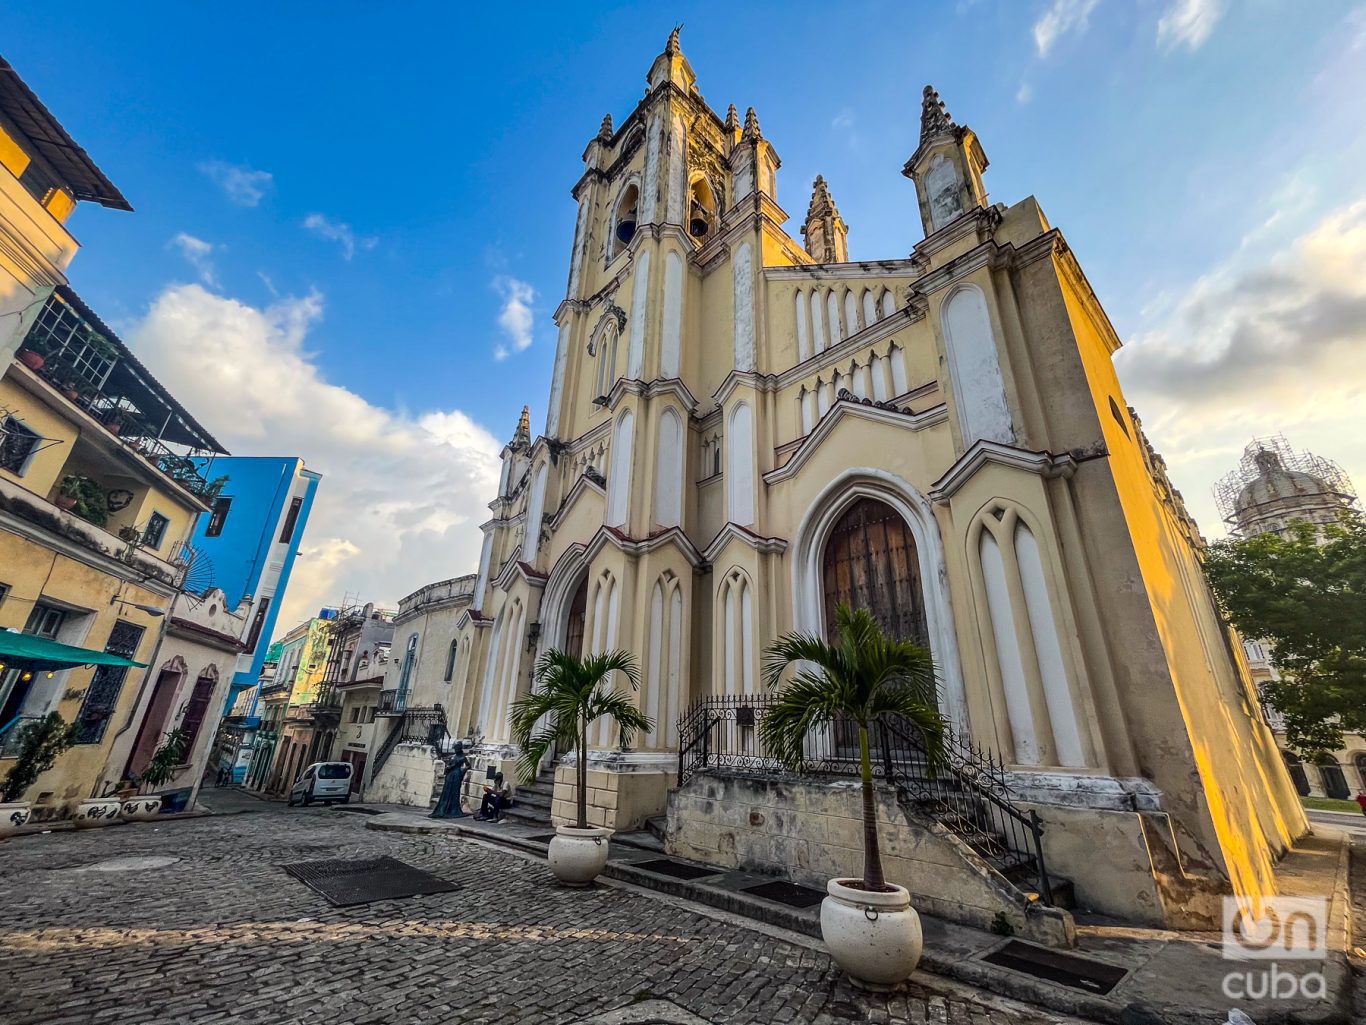  La iglesia del Santo Ángel Custodio, en la calle Compostela, en La Habana Vieja. Foto: Kaloian.